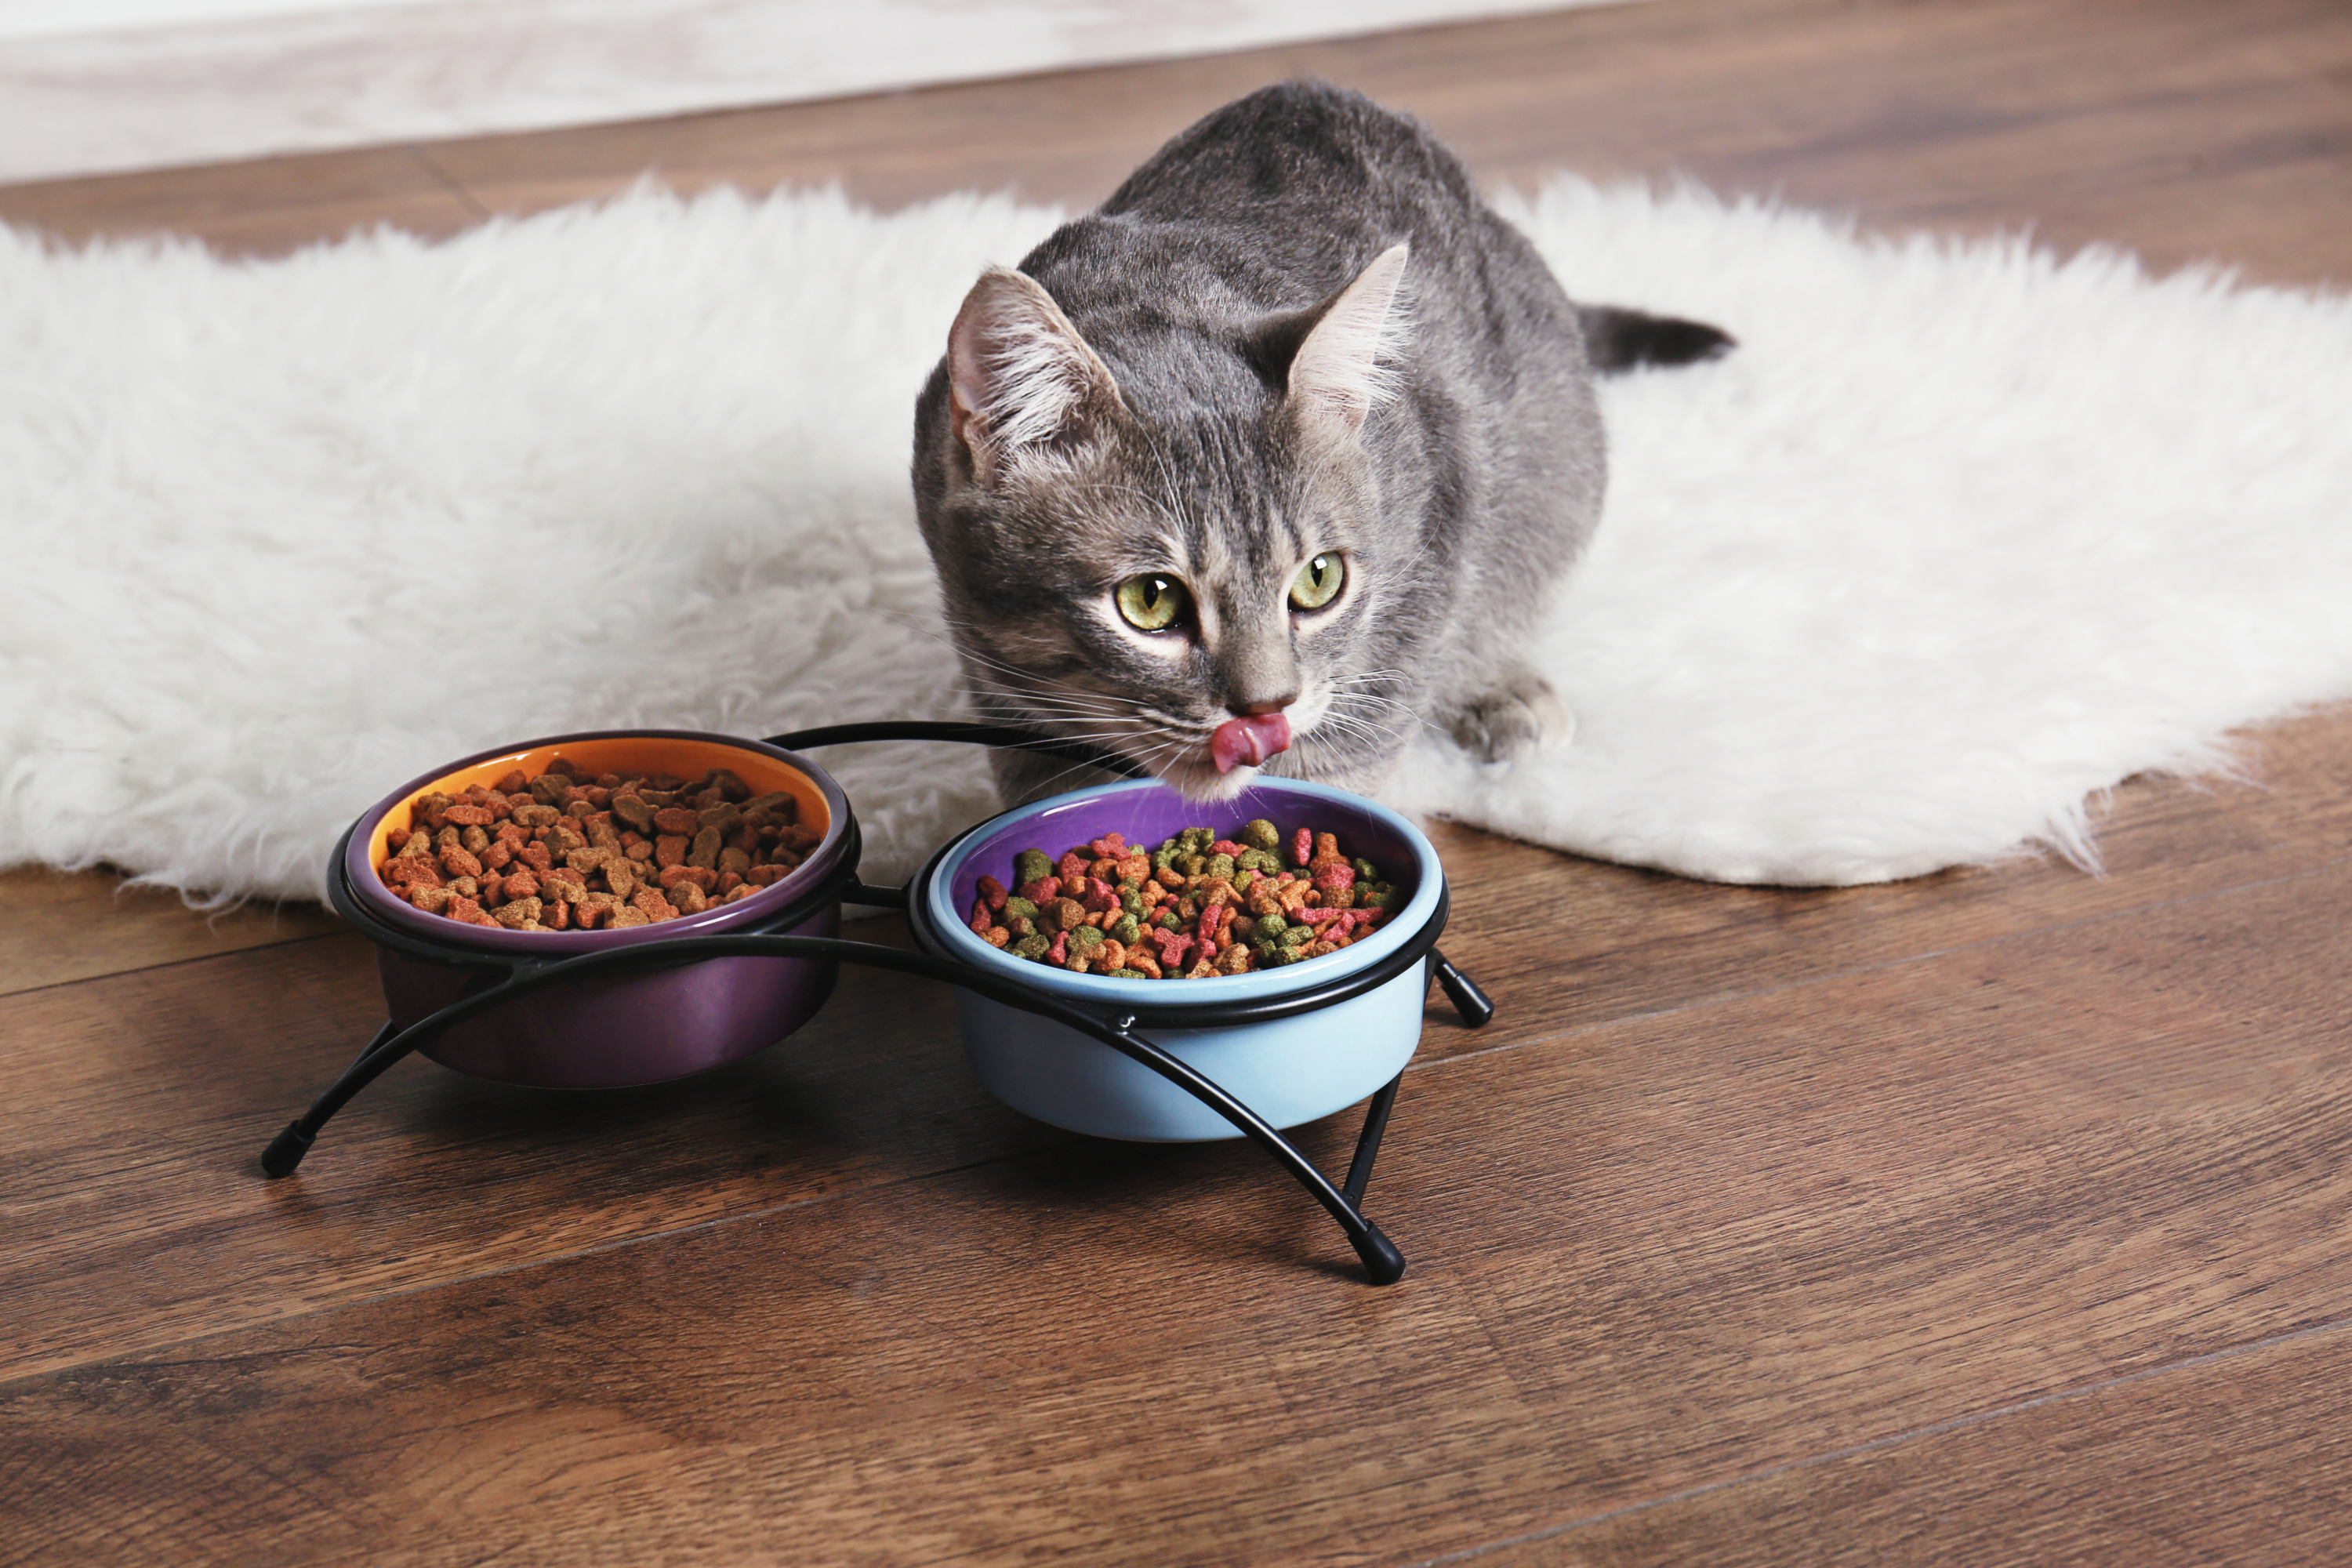 Où placer la nourriture de son chat dans la maison ?